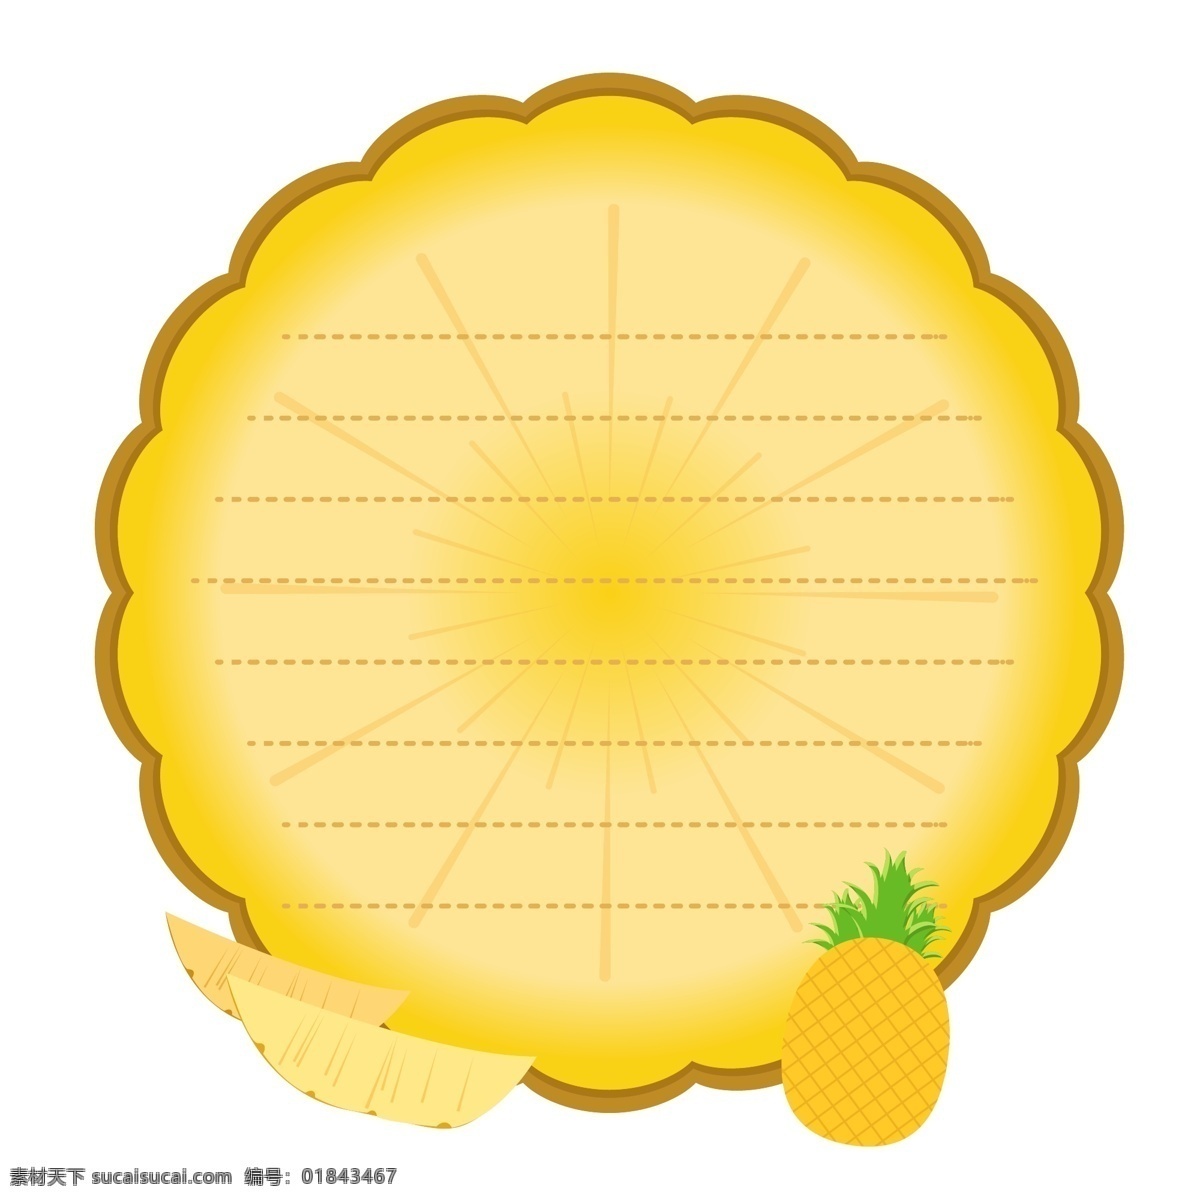 矢量 菠萝 装饰设计 元素 文本框 配图 水果 框